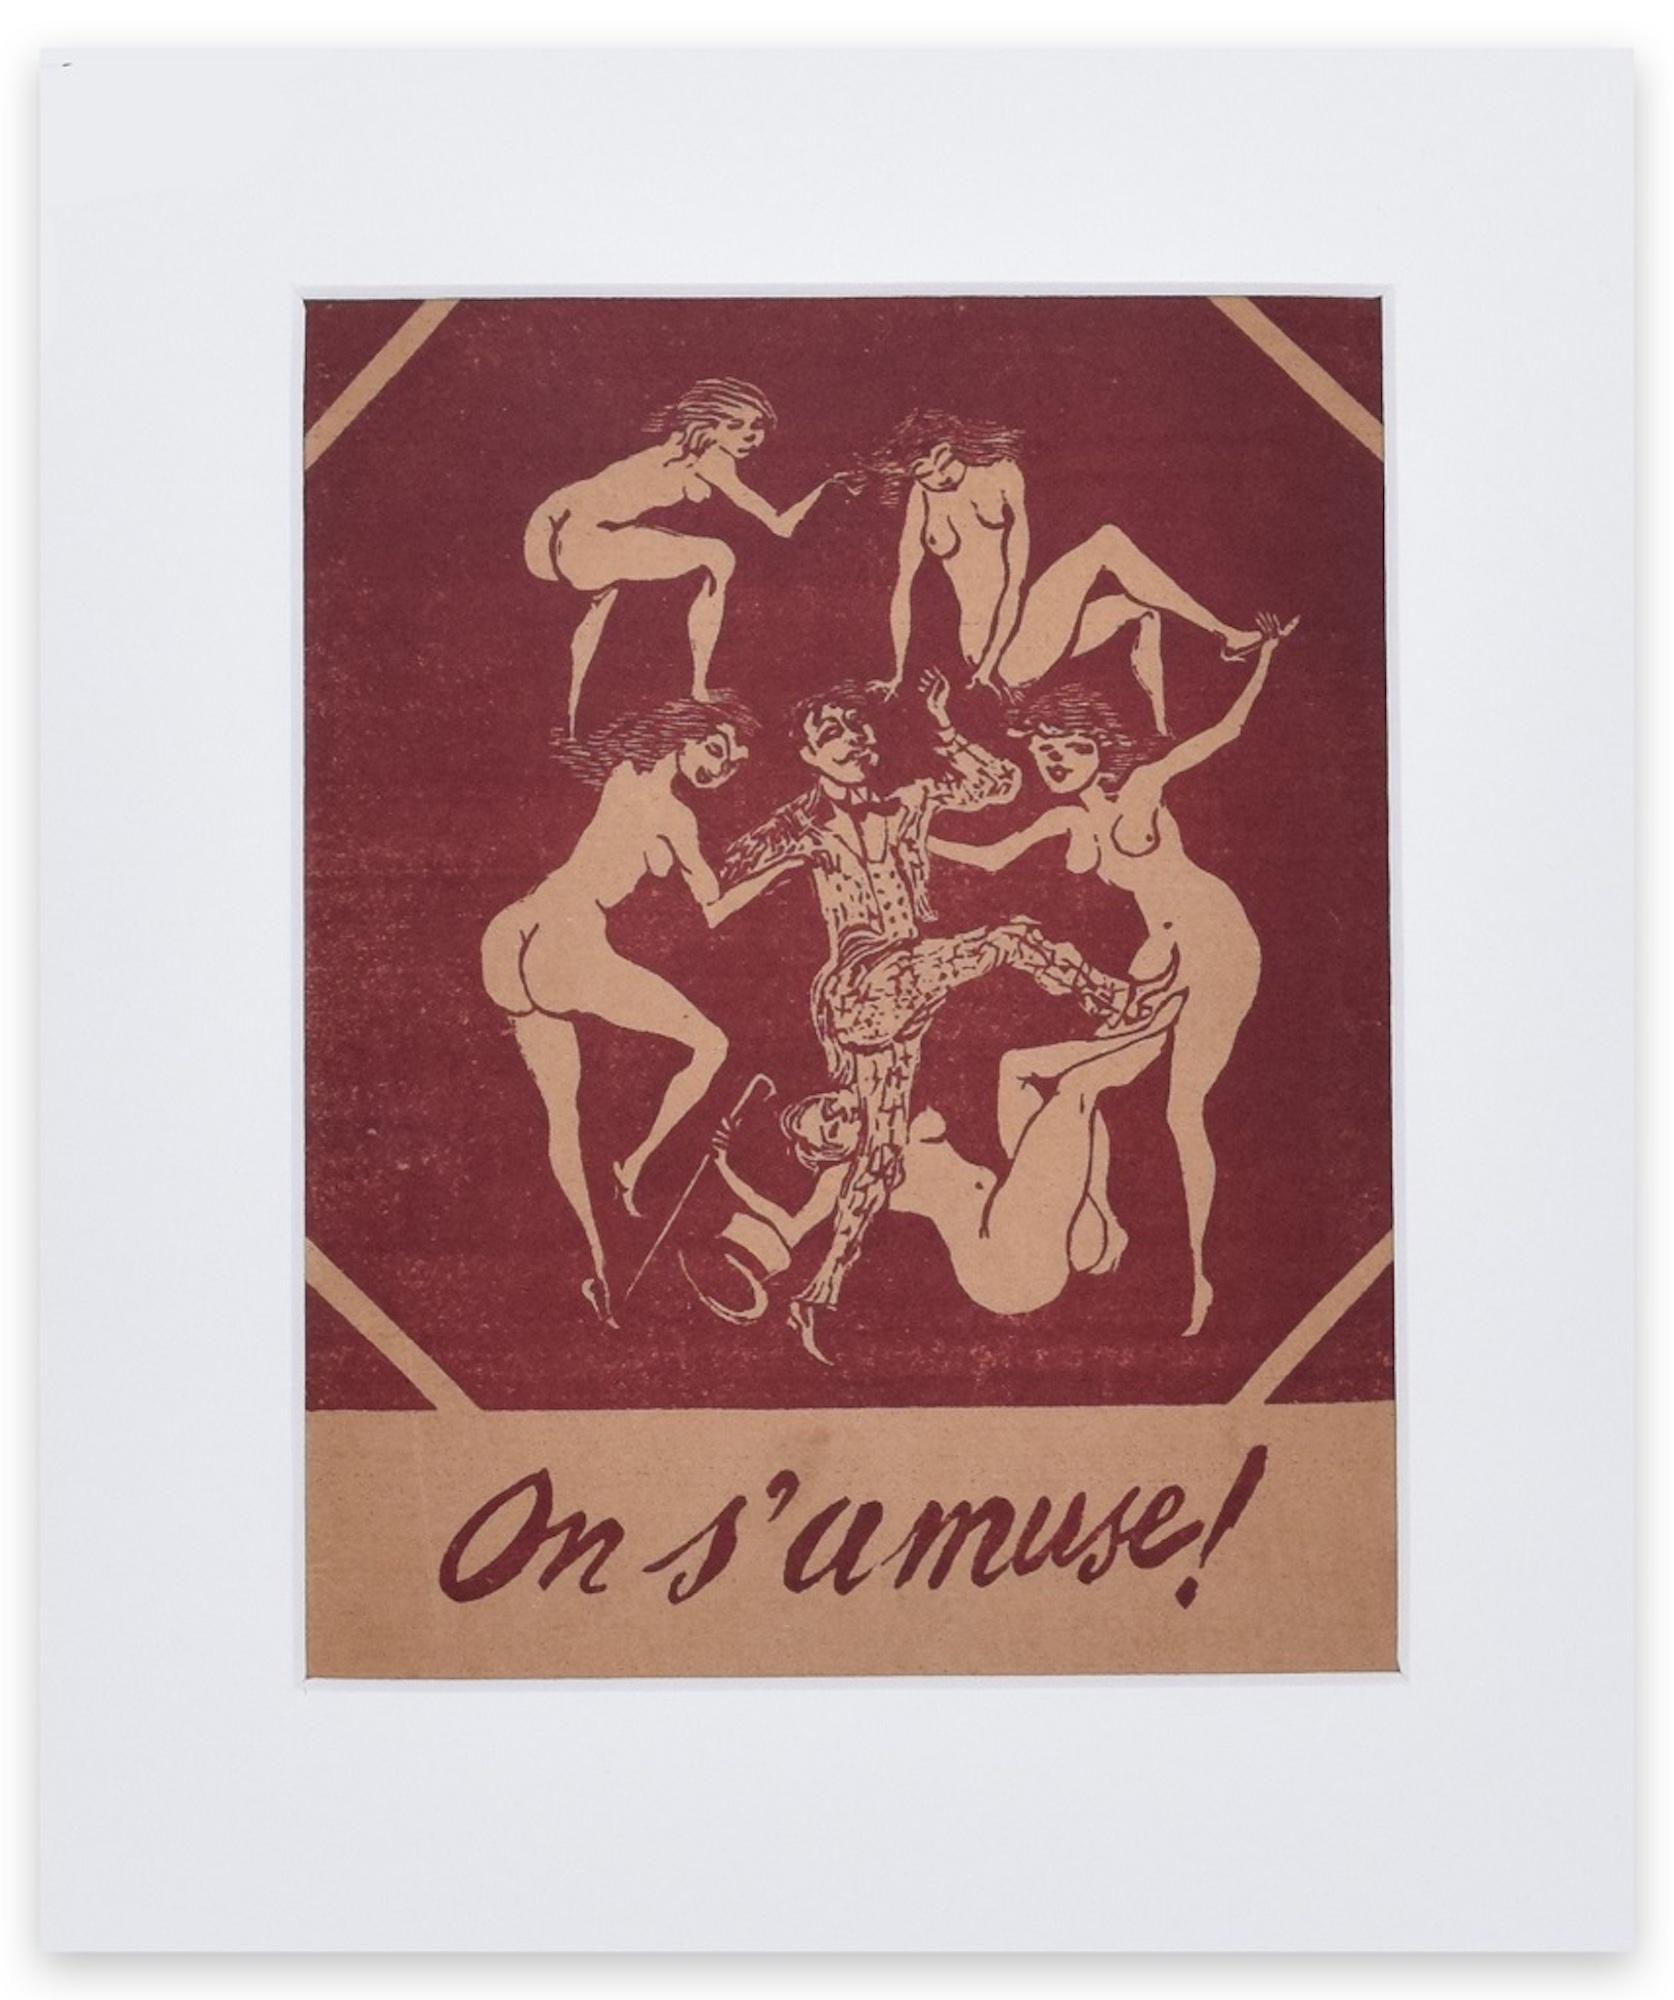 On S'Amuse ist ein Originalkunstwerk von Mino Maccari aus dem Jahr 1945.

Original farbige Xylographie.

Einschließlich Passepartout: 49 x 33,5 cm

Guter Zustand mit Ausnahme der zeitbedingten Vergilbung des Papiers und einiger Stockflecken.

Dieser